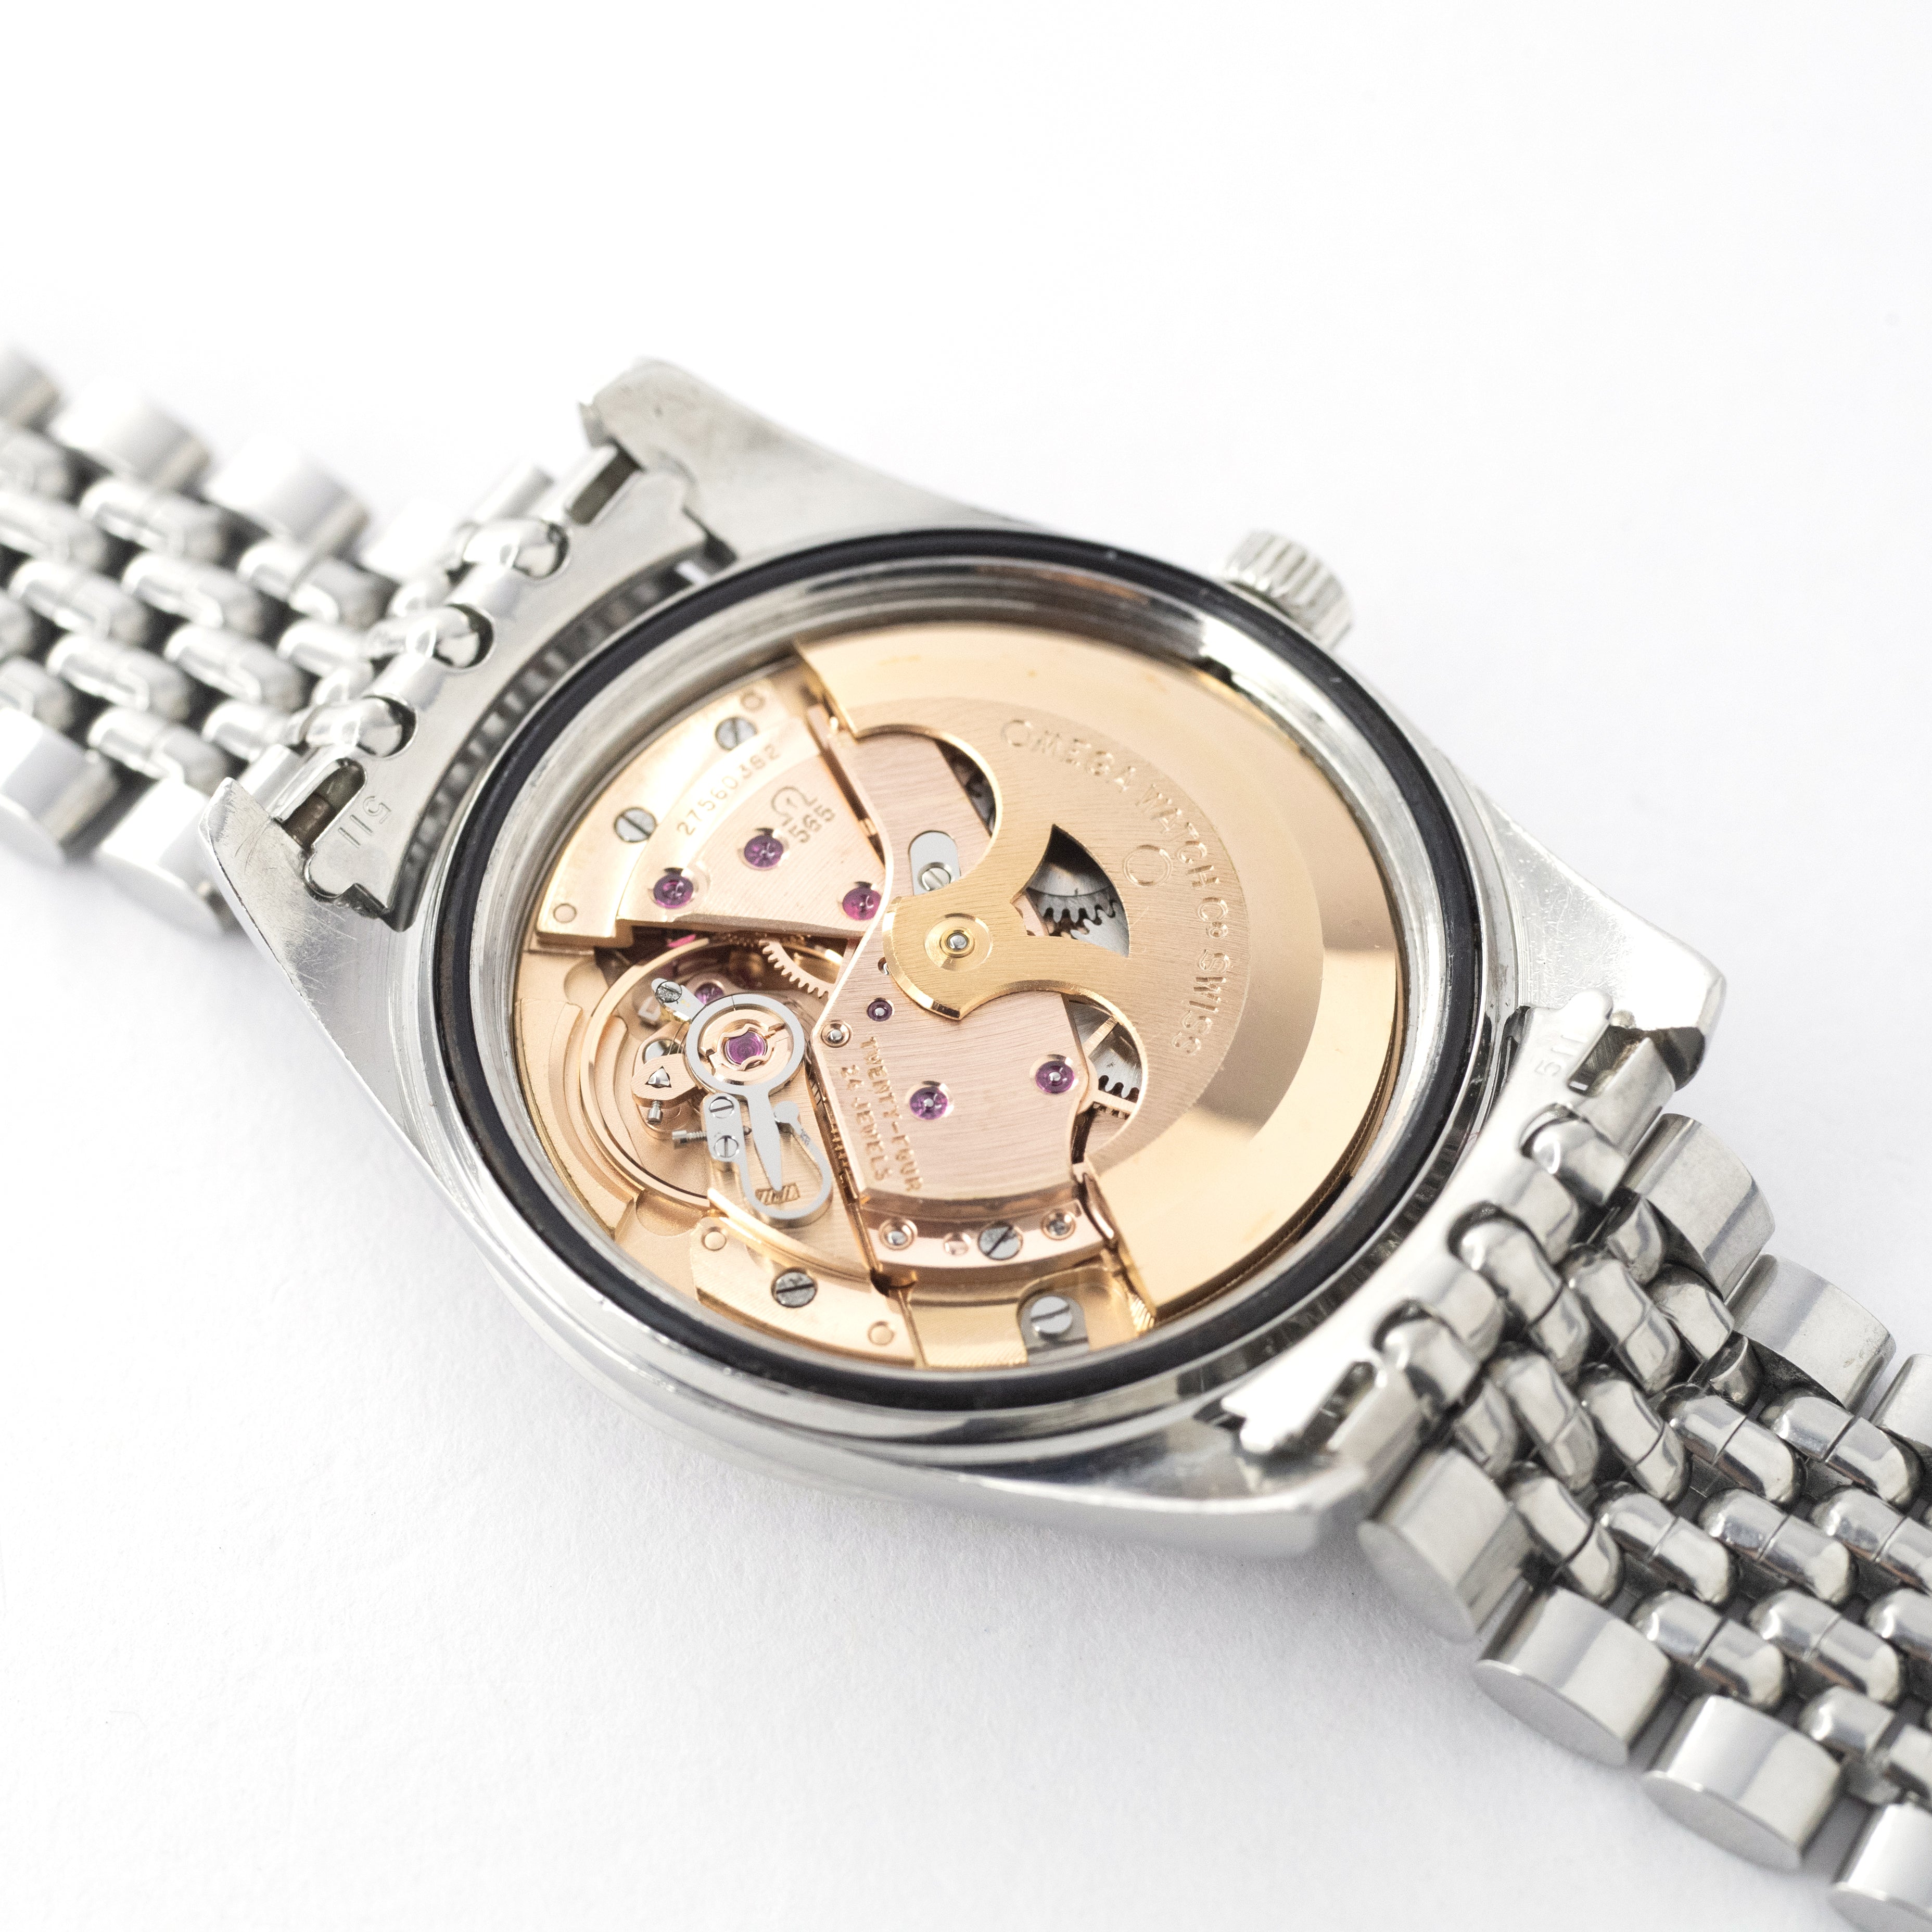 ブランド雑貨総合 【MKJ】オメガ OMEGA シーマスター 正常稼働 腕時計 